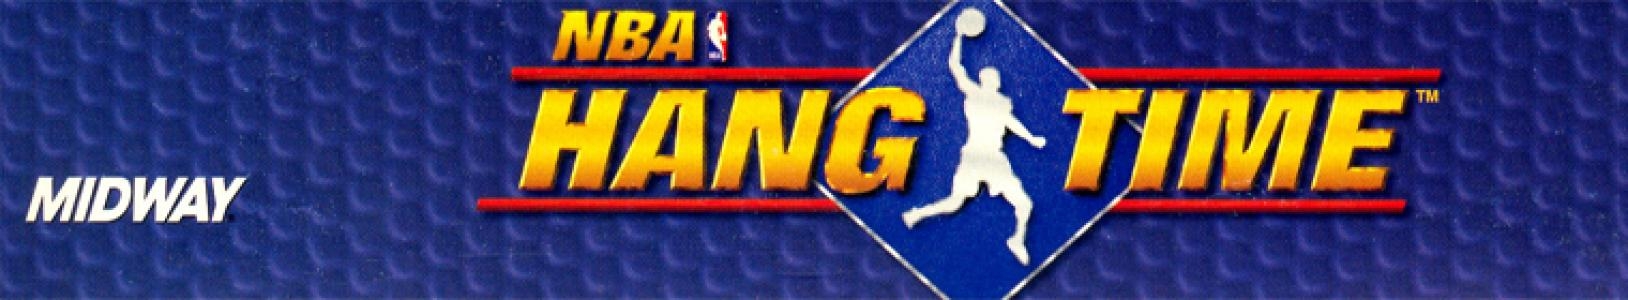 NBA Hangtime banner